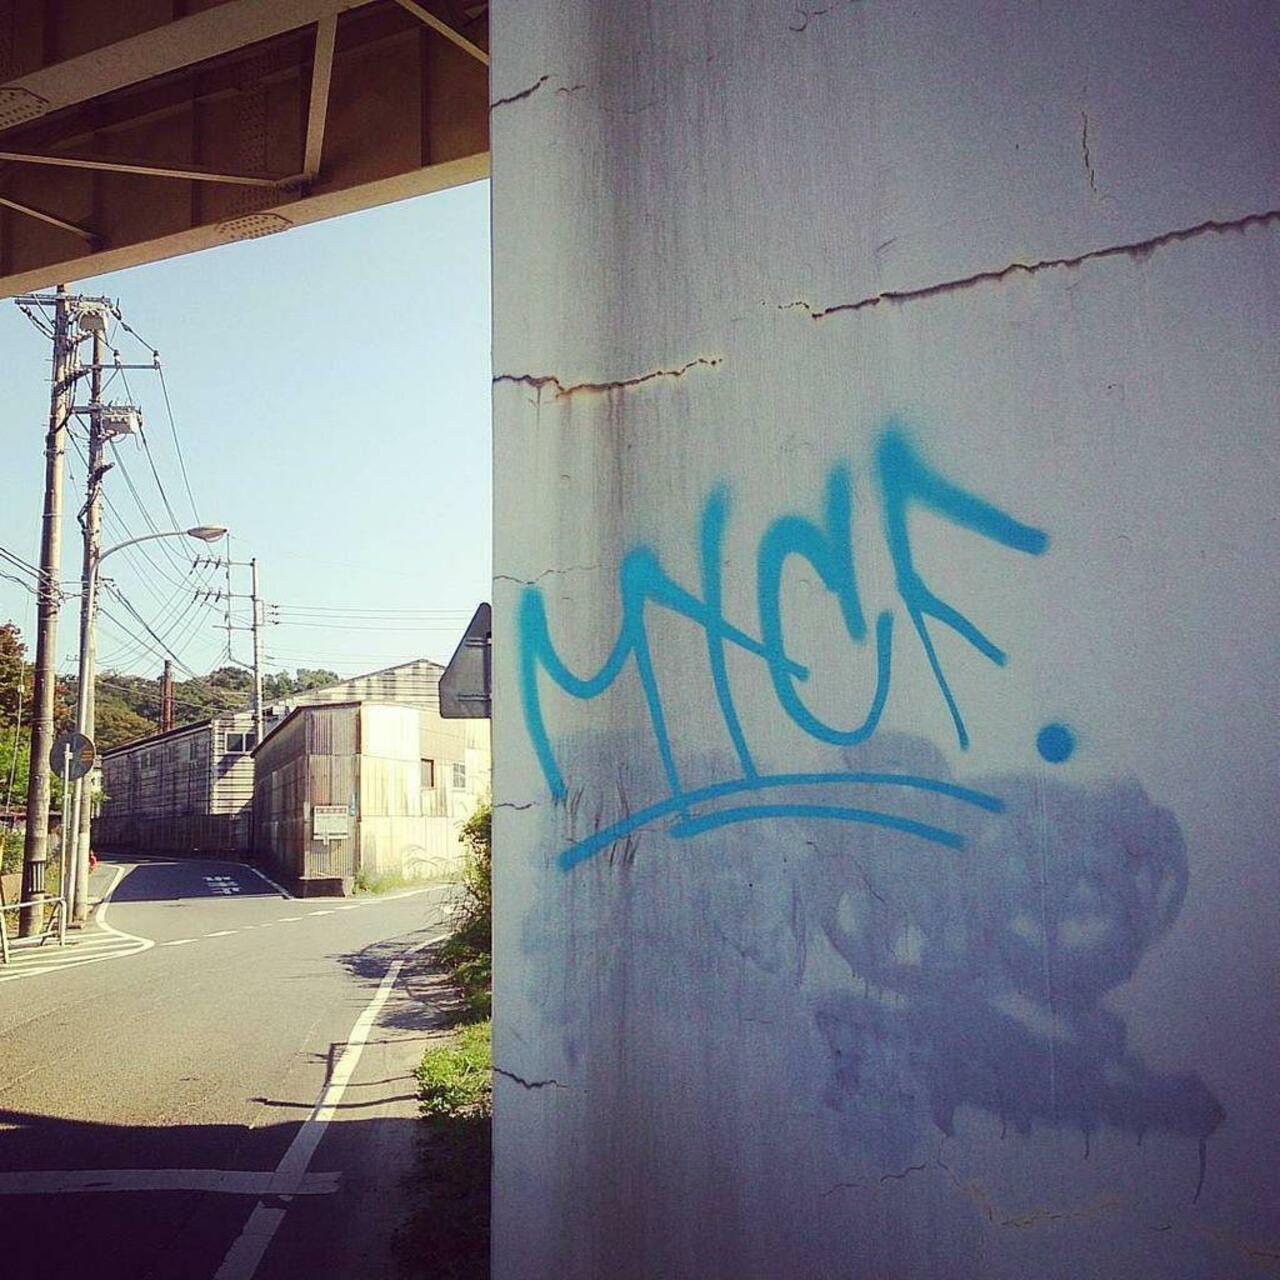 RT @artpushr: via #tohfoct "http://bit.ly/1NrHVG2" #graffiti #streetart http://t.co/shSuAP96Uy